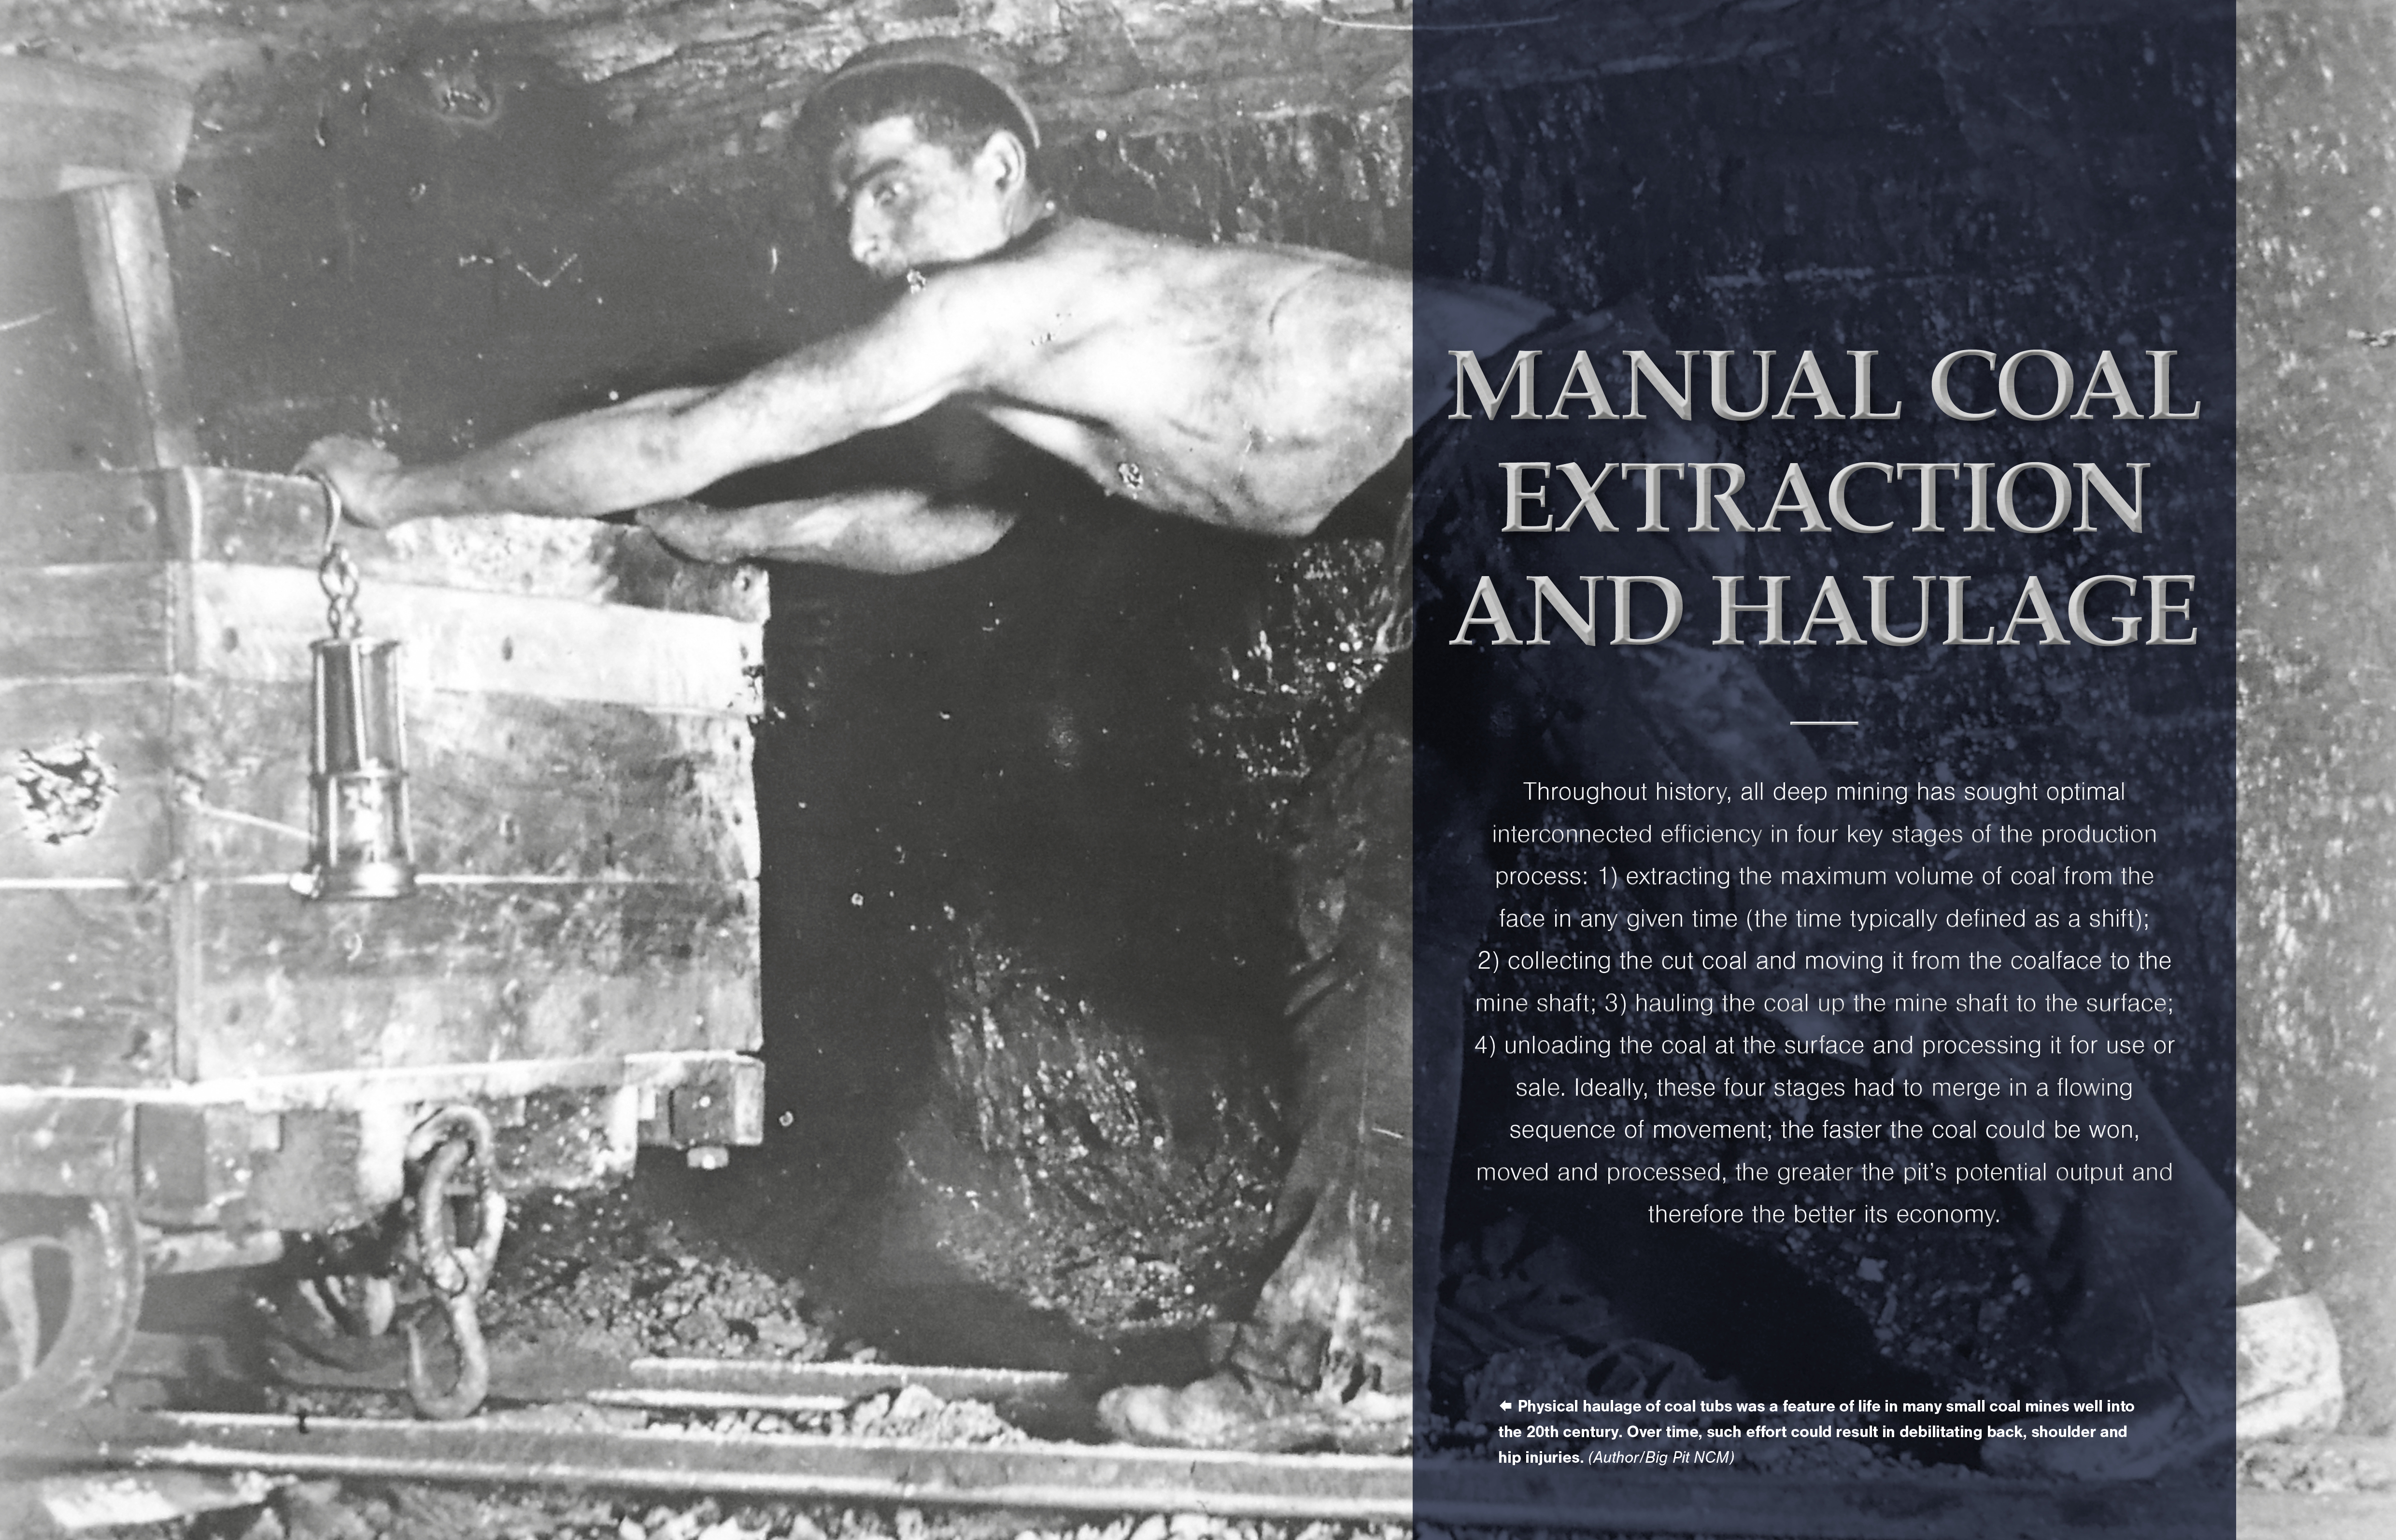 Coal Mine Operations Manual